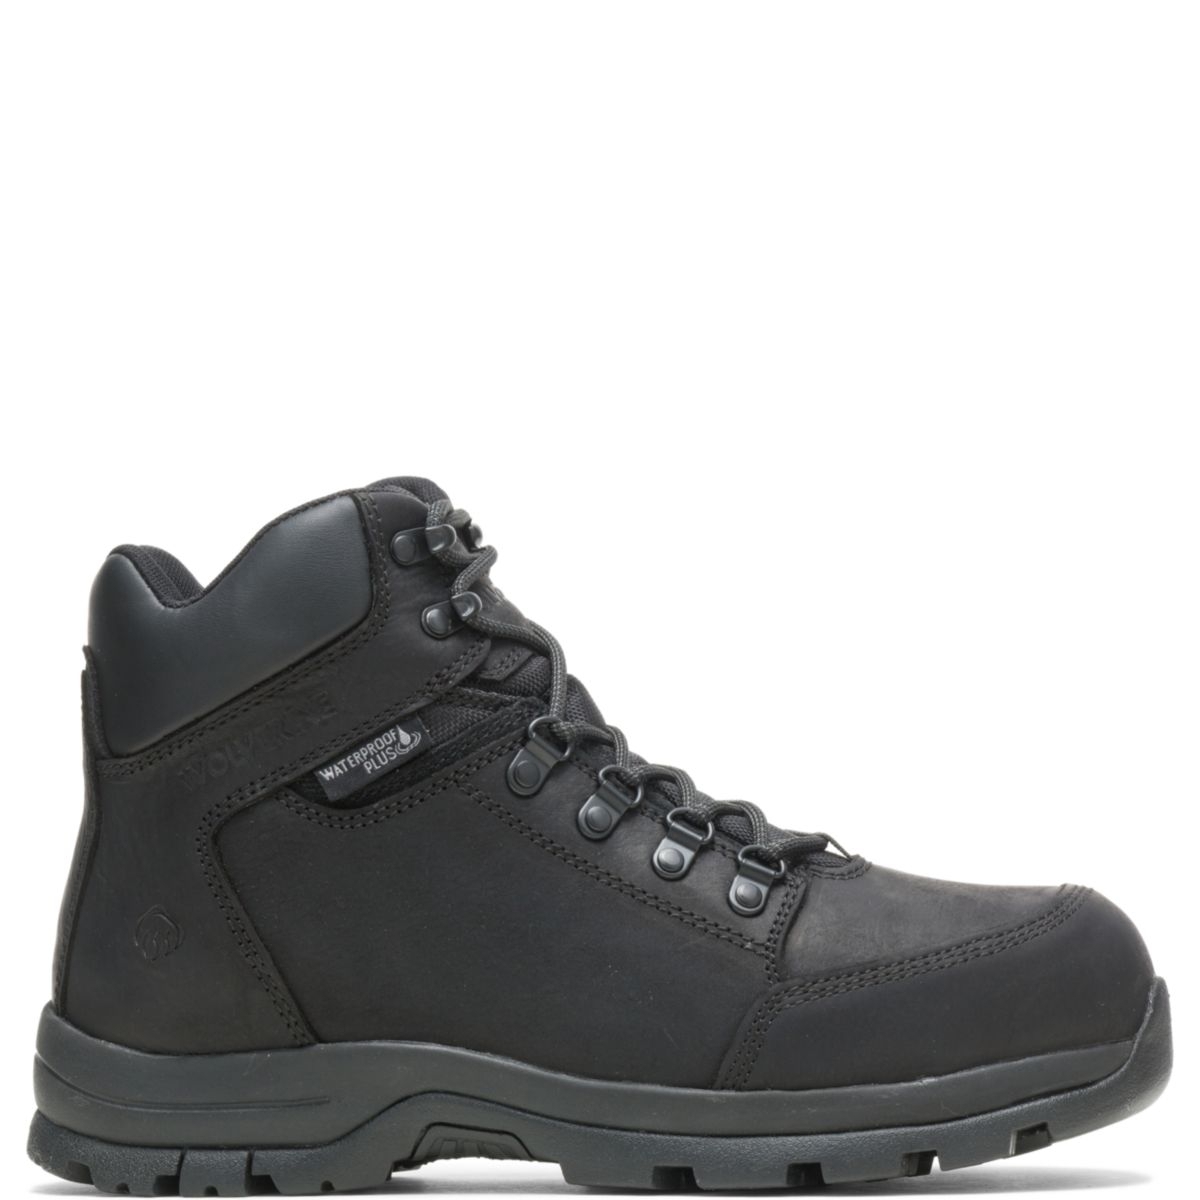 WOLVERINE Men's Grayson Steel Toe Waterproof Work Boot Black - W211042 BLACK - BLACK, 10